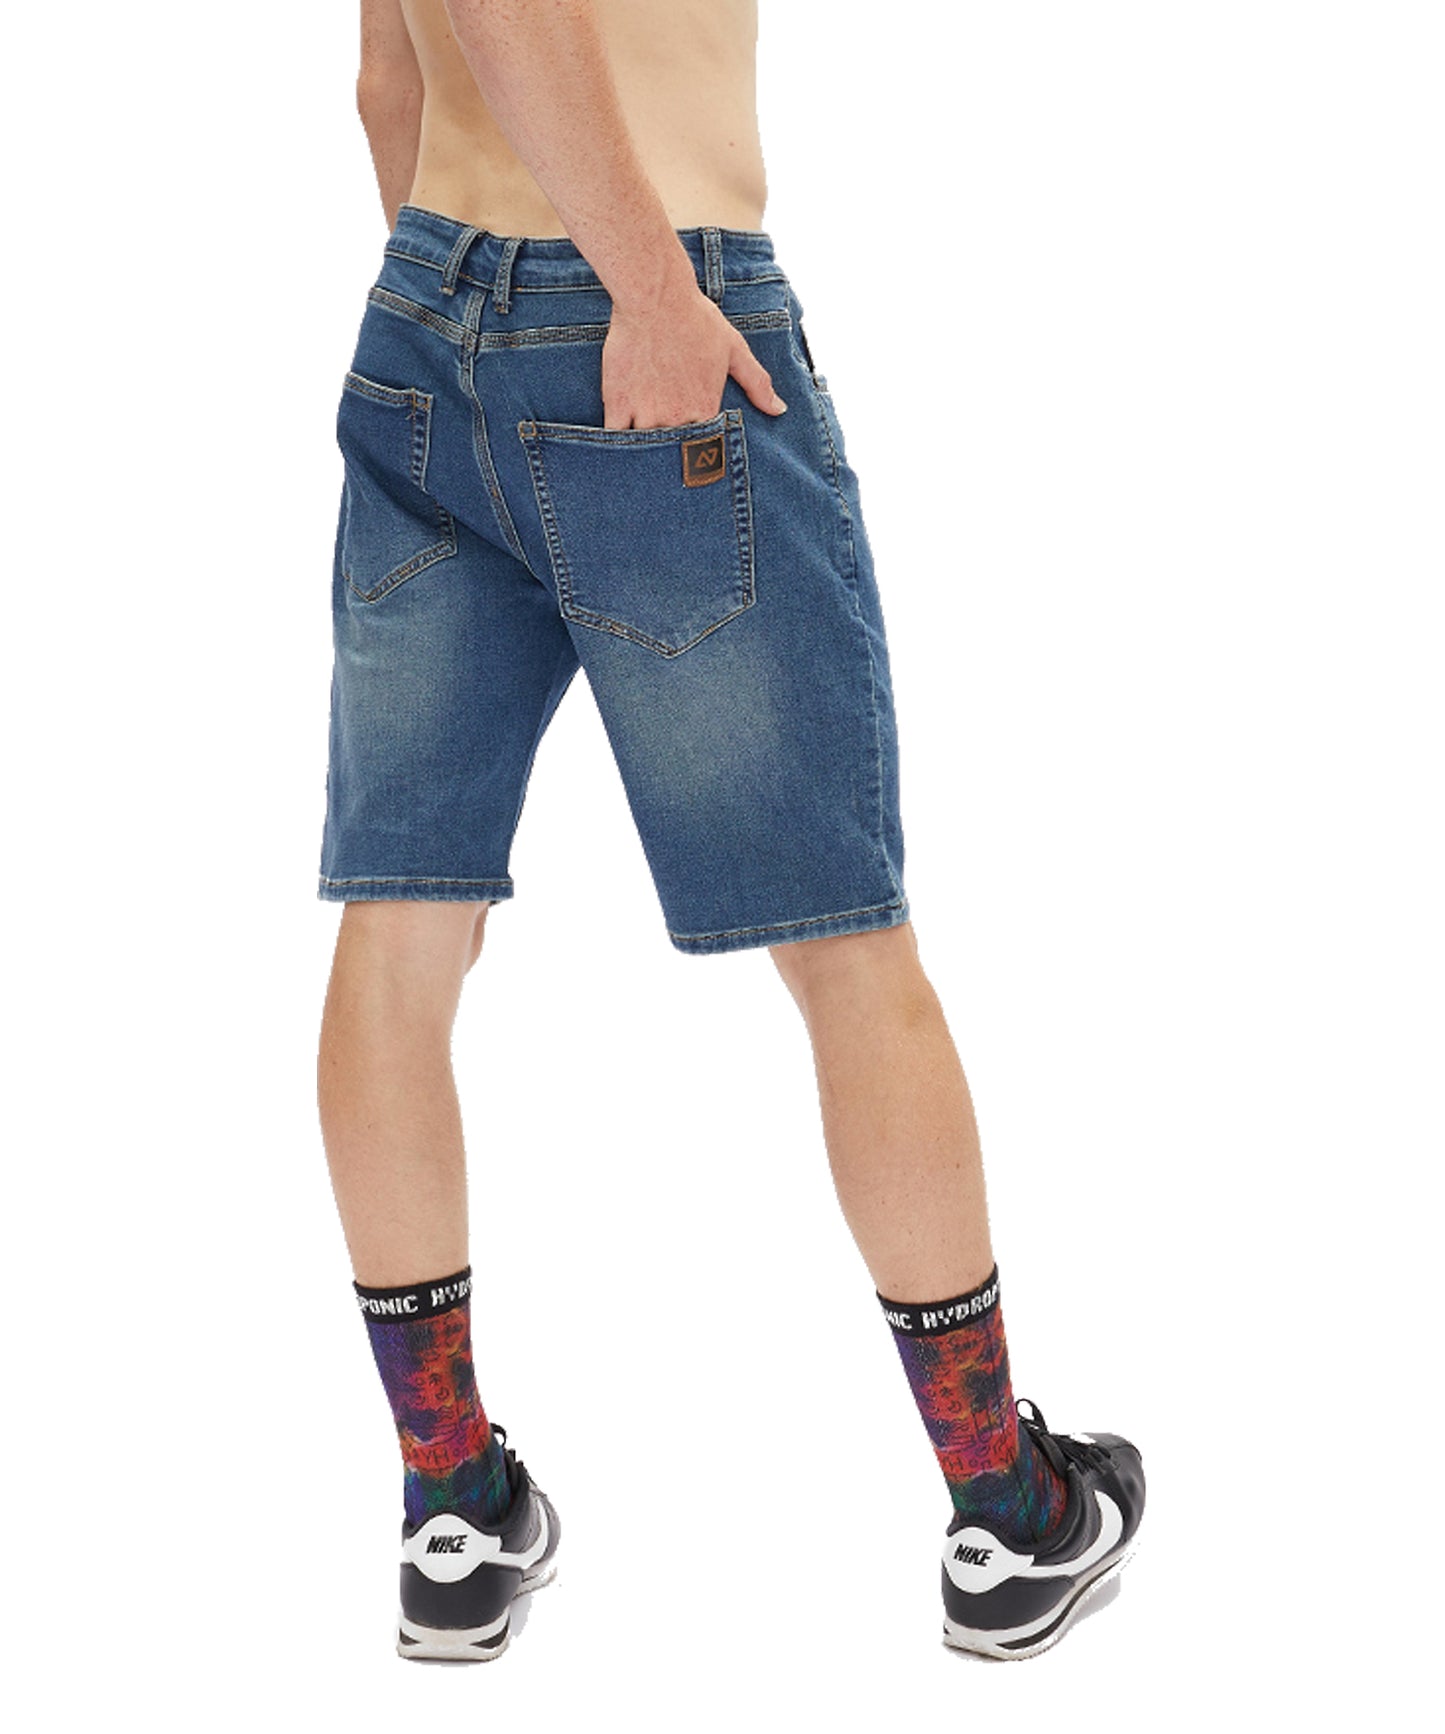 hydroponic century-sweat-dark-used-pantalón corto-tipo jogger-color denim-cintura con cordón-zonas reforzadas-para la práctica del skateboard.